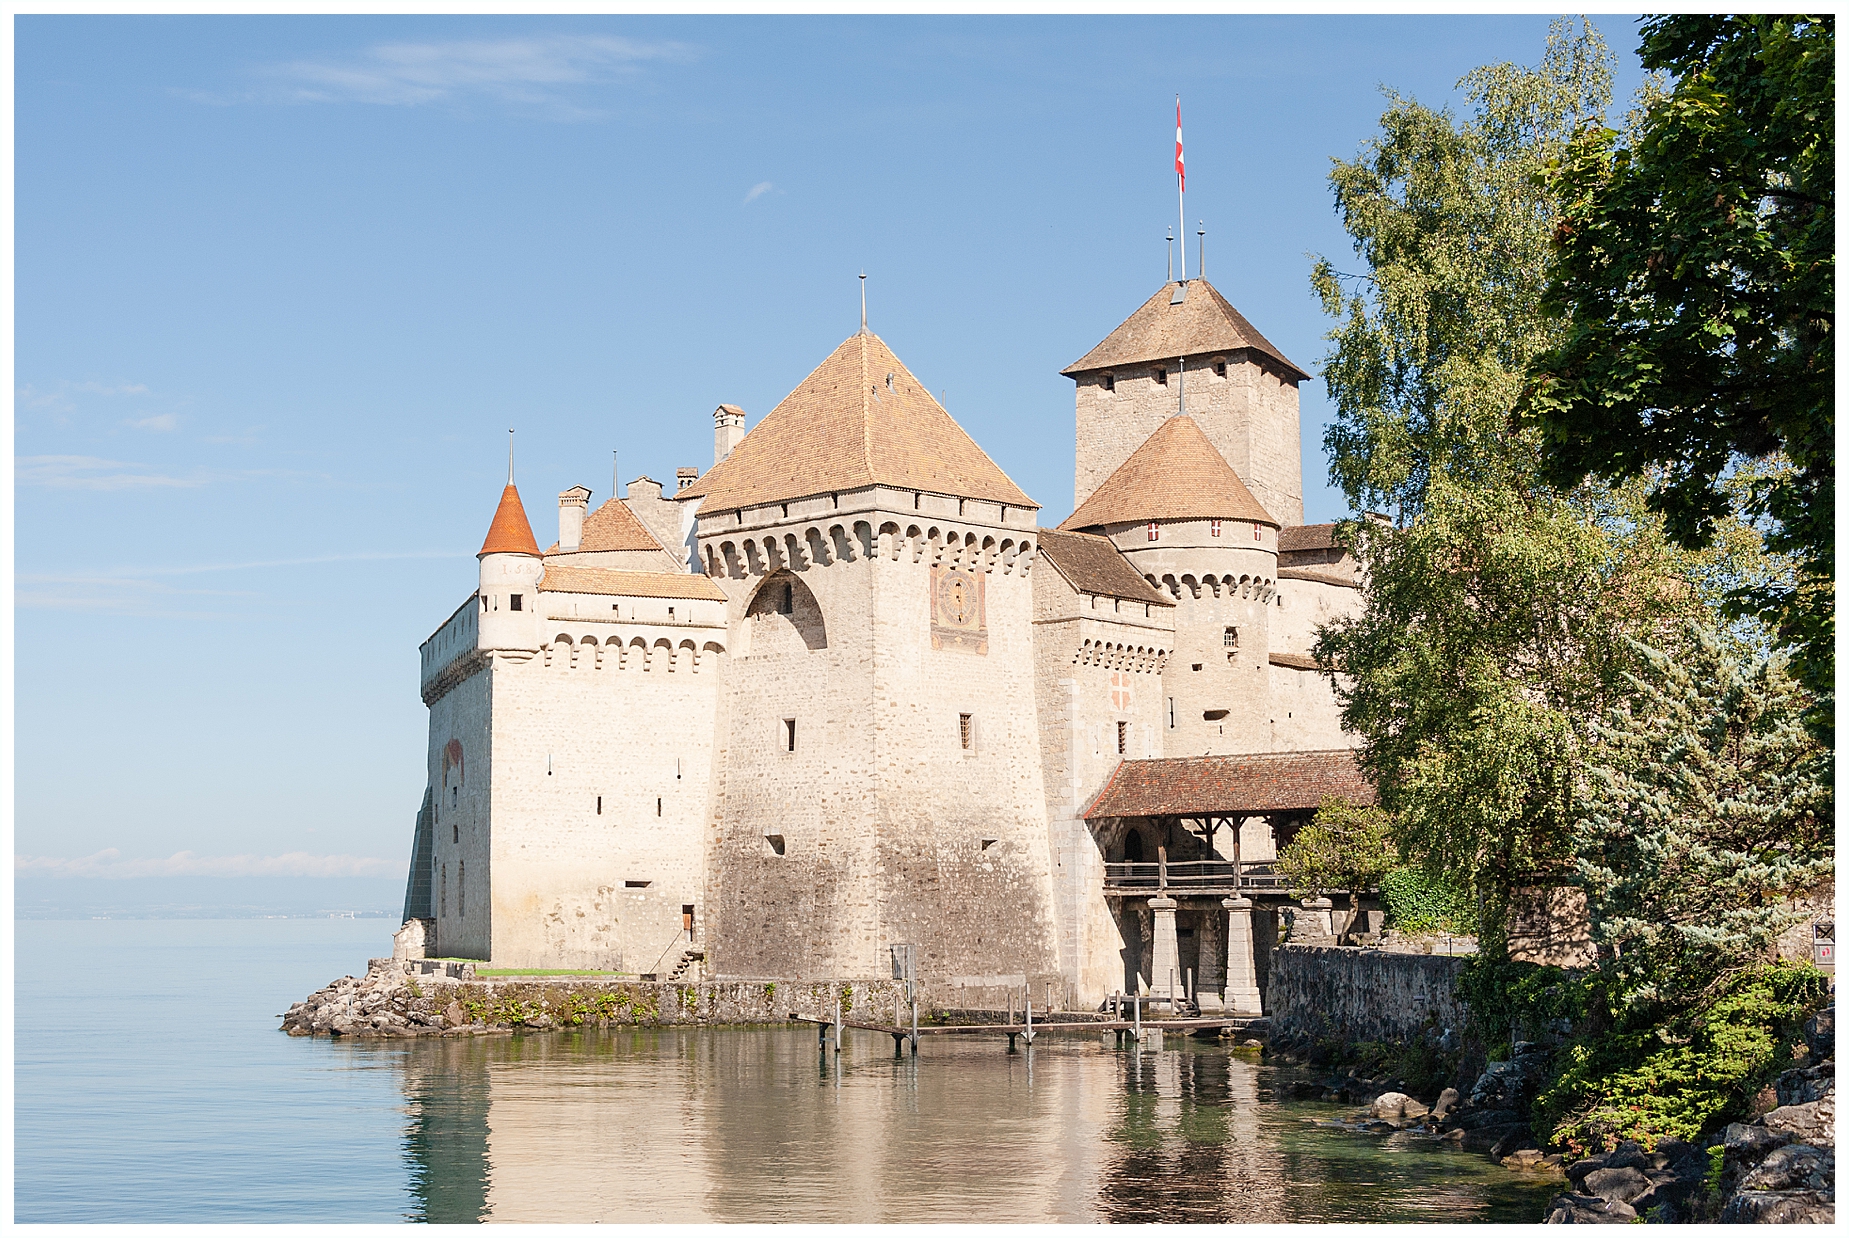 Chateau de Chillon Feature Image